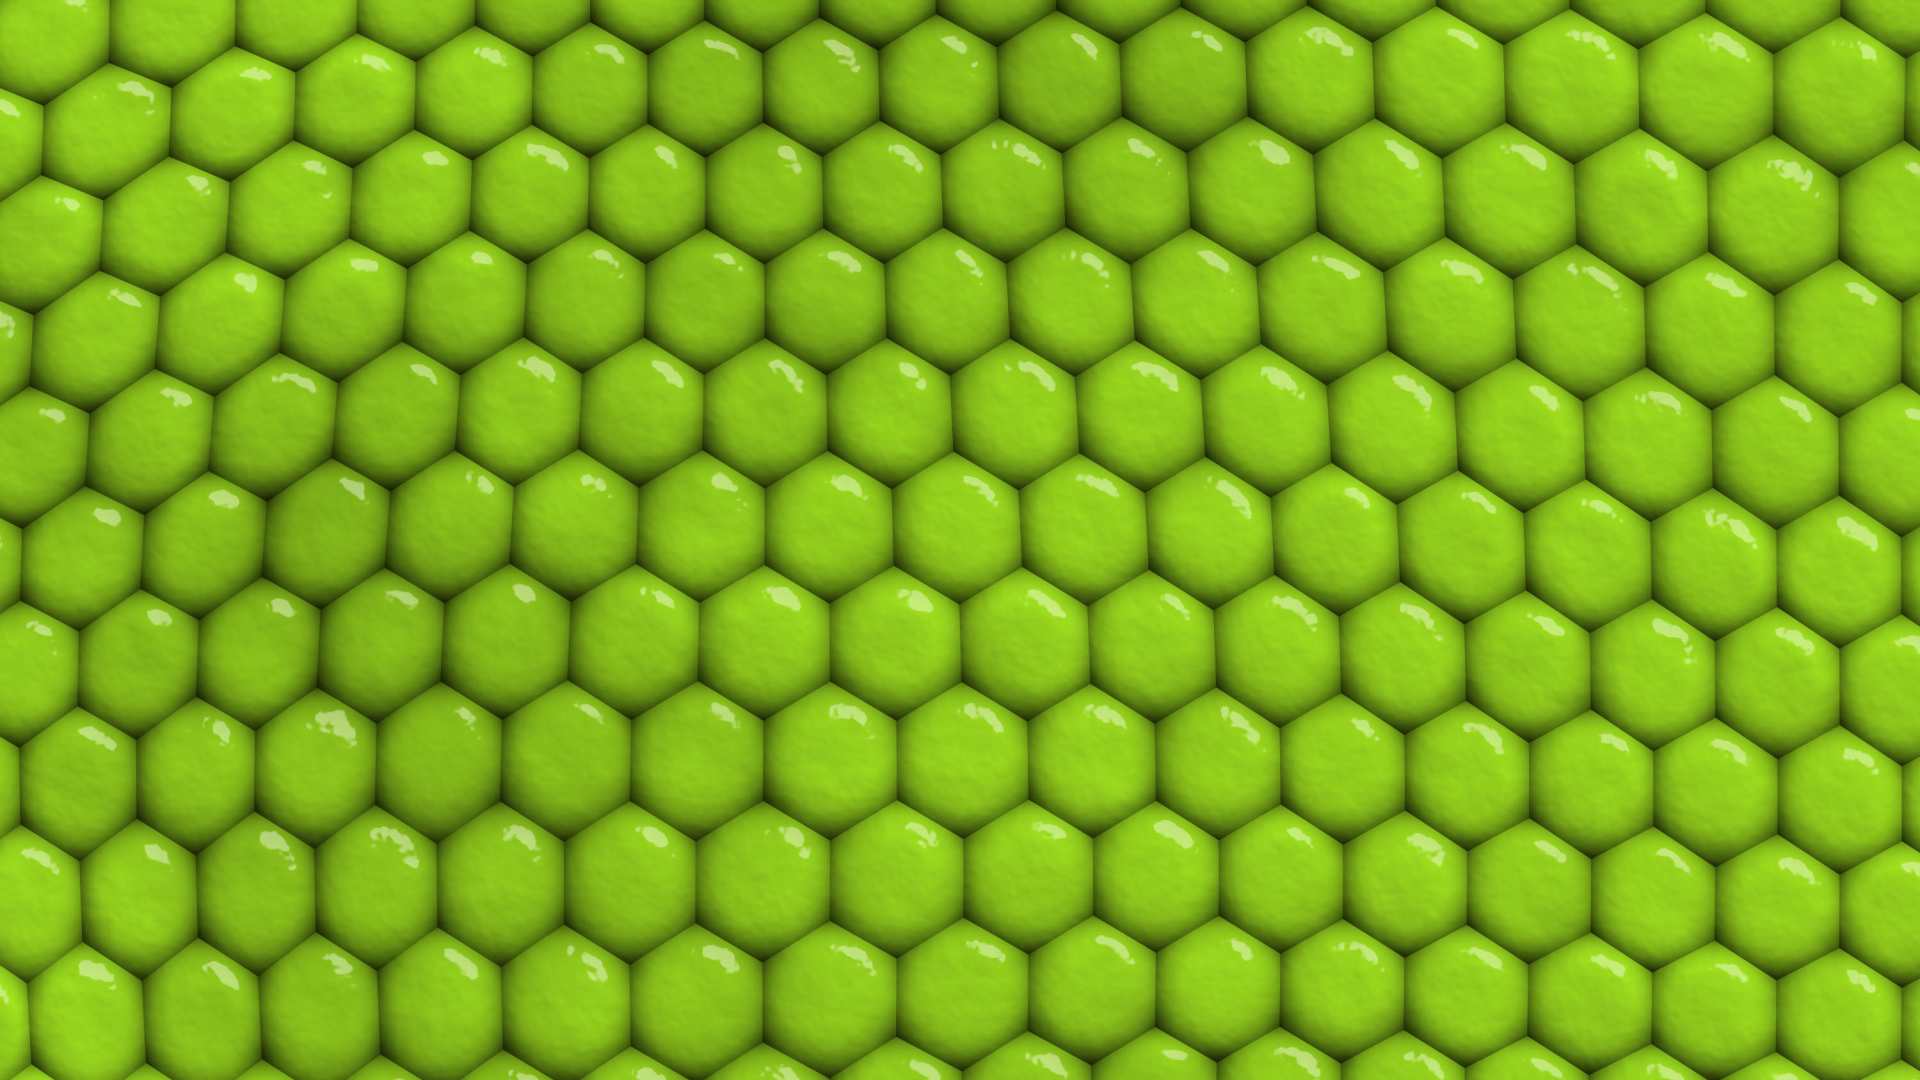 تصویر چند ضلعی با رنگ سبز خاص که شکل لانه زنبوری را تشکیل داده است 